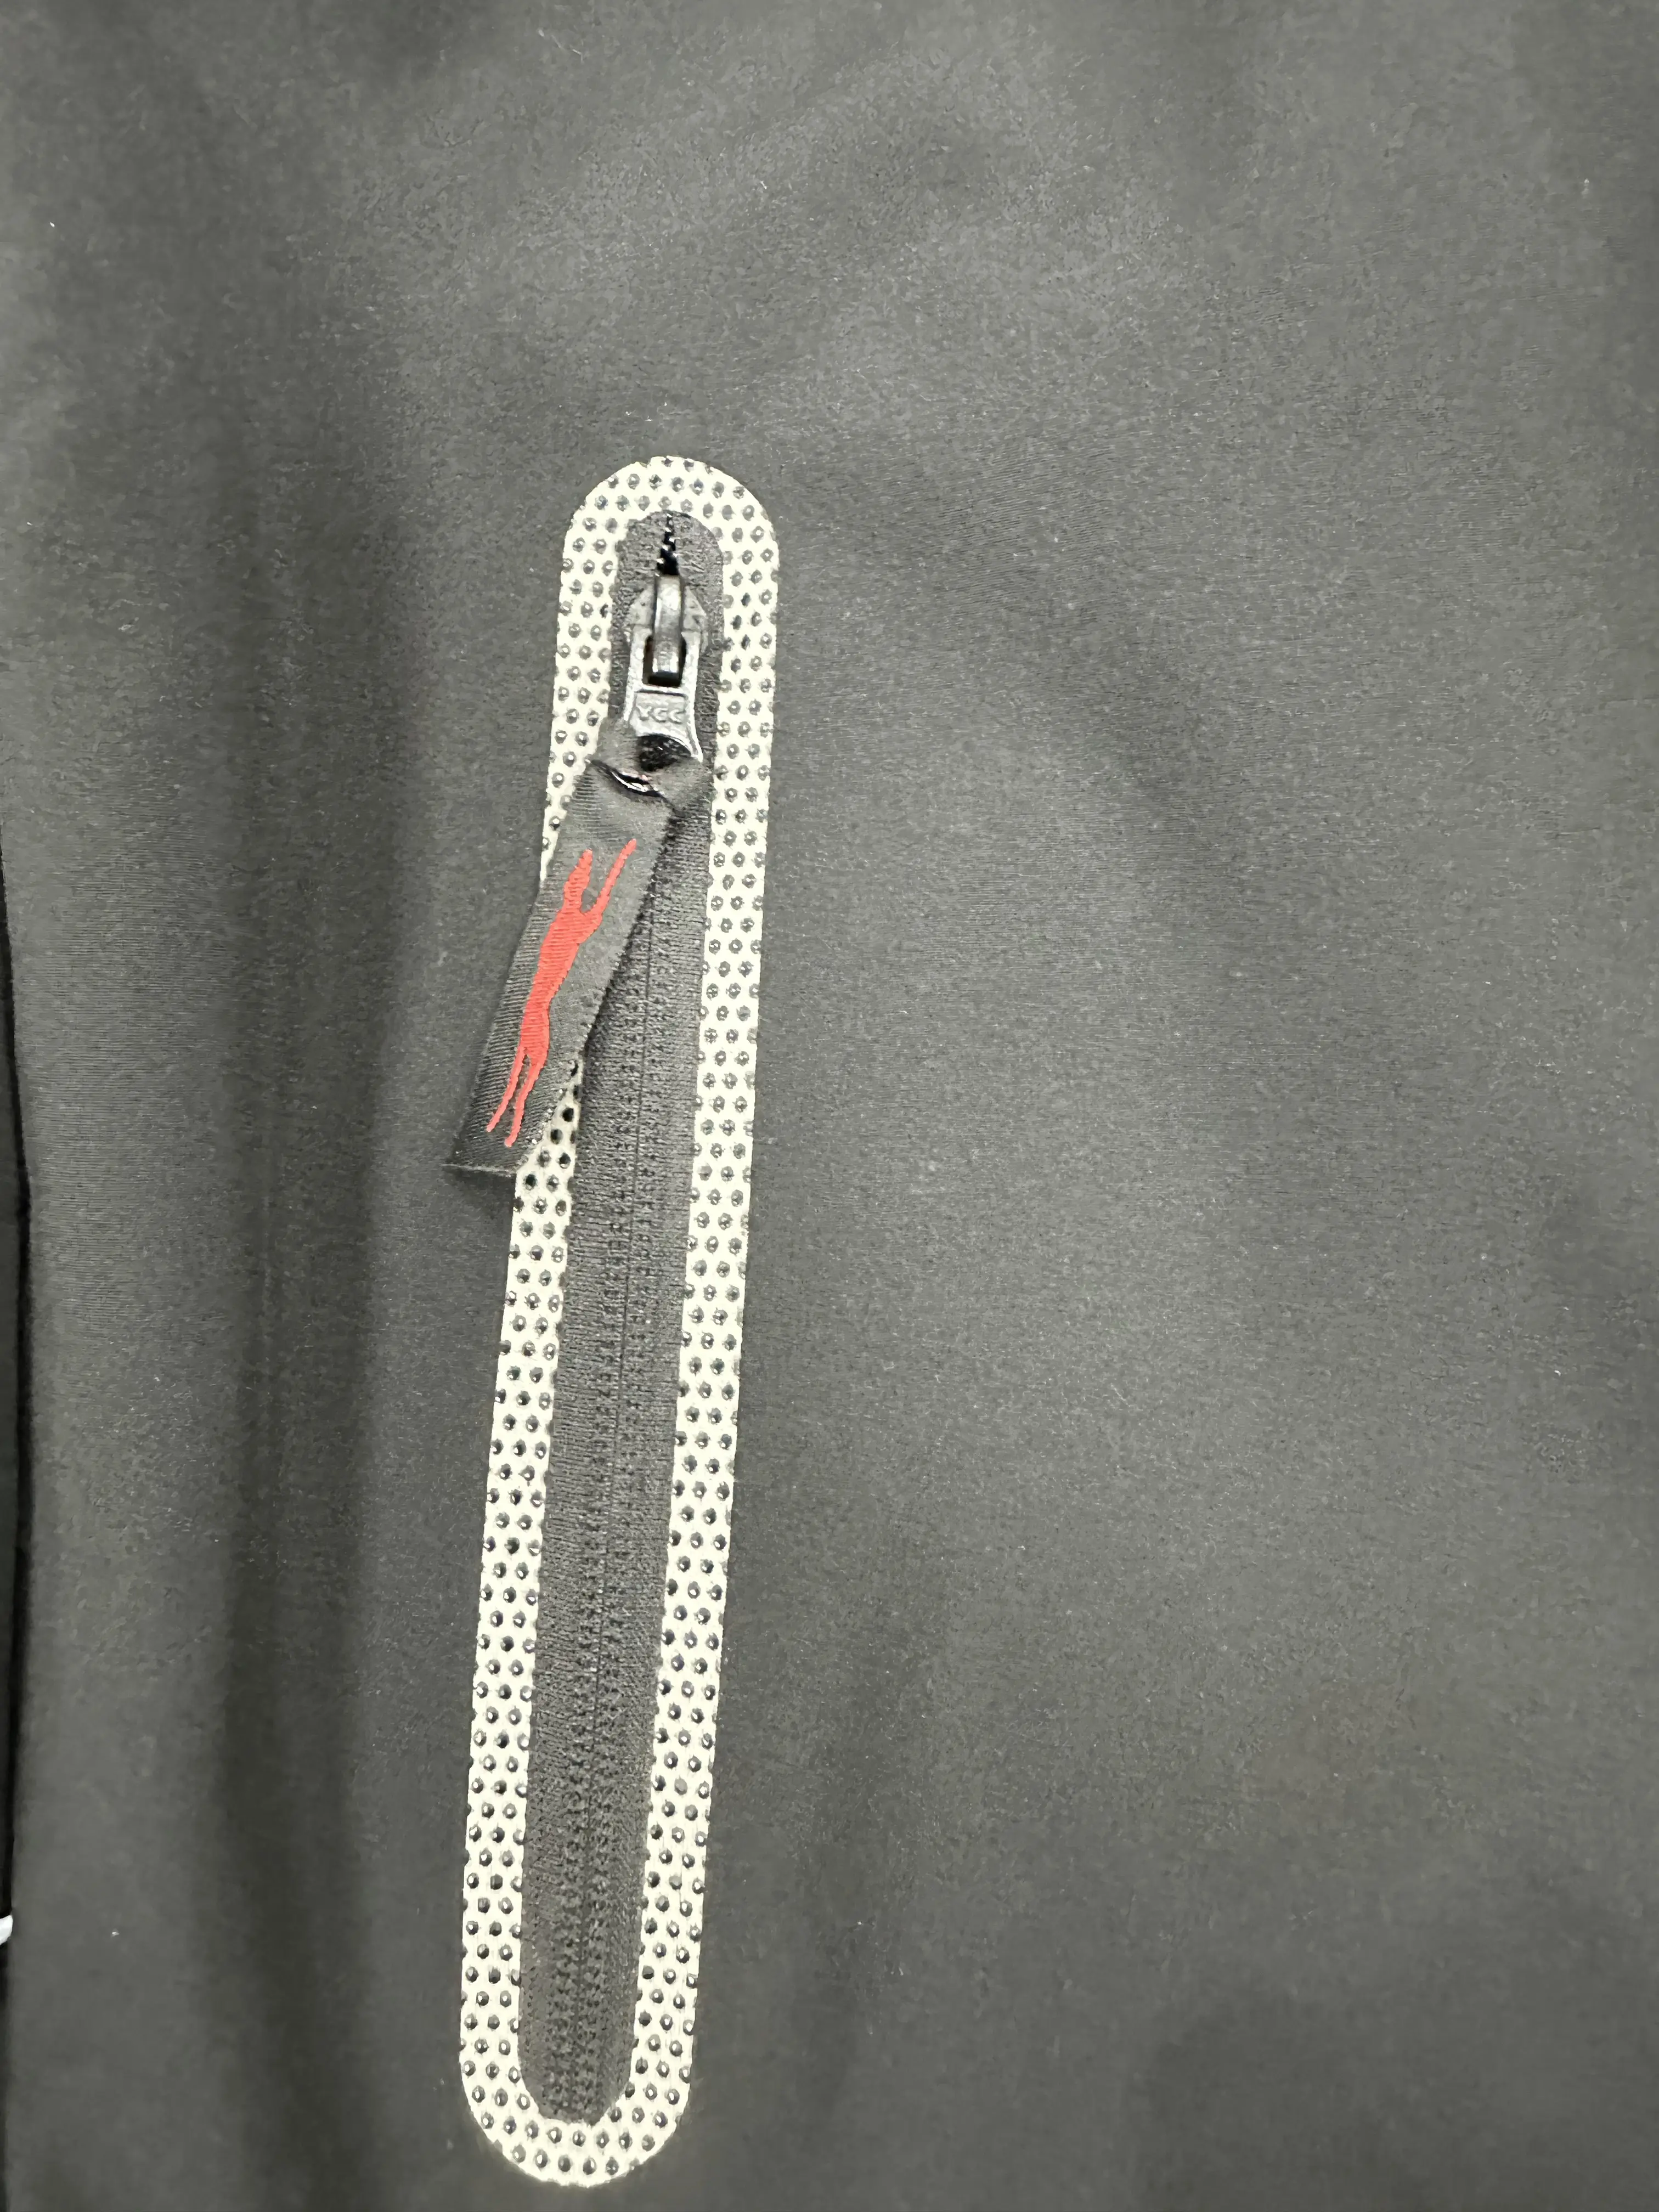 소프트 쉘 재킷 지퍼 폐쇄 방풍 플러스 사이즈 특징 스탠드 칼라 통기성 남성 방수 재킷